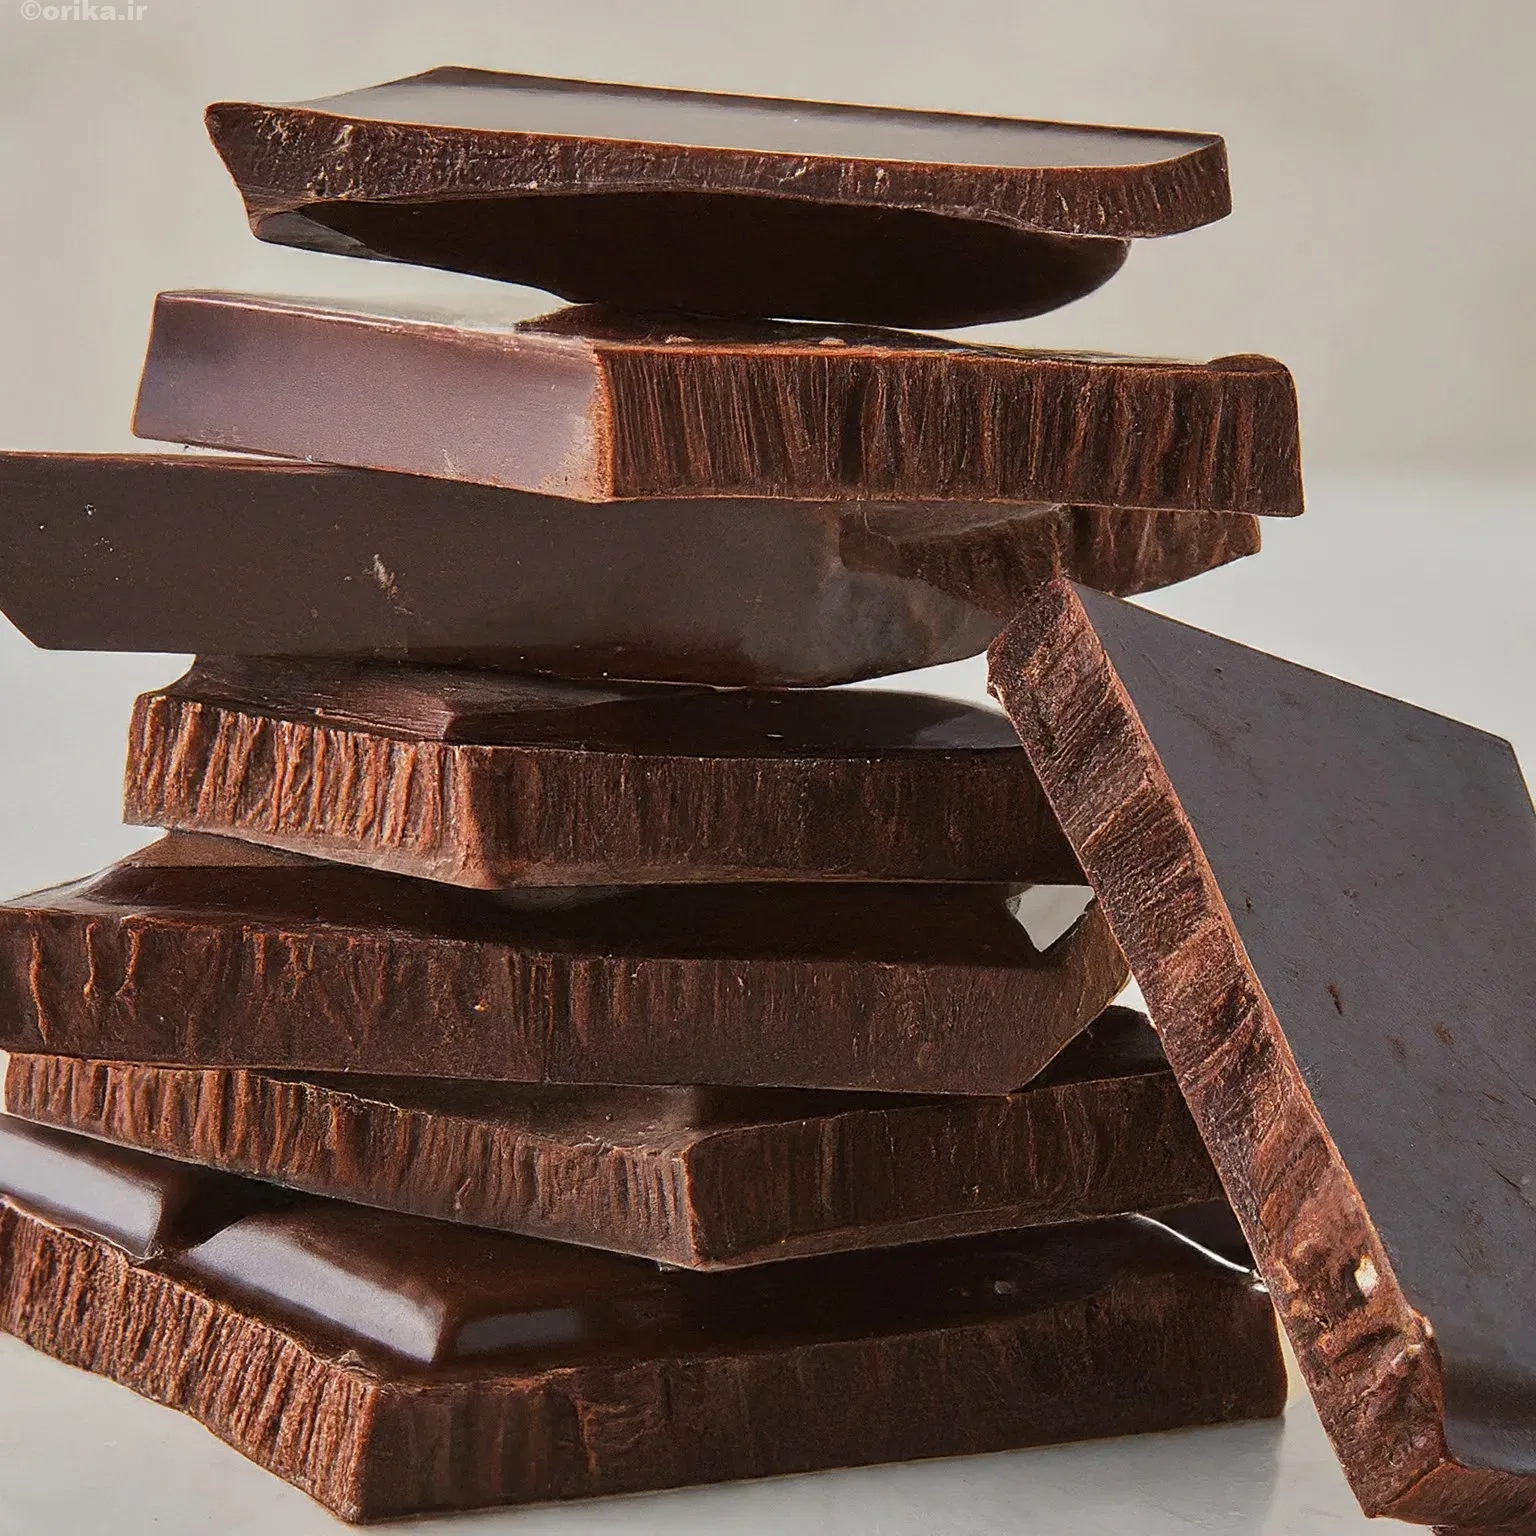 شکلات یا کاکائو برای تقویت قوای جنسی